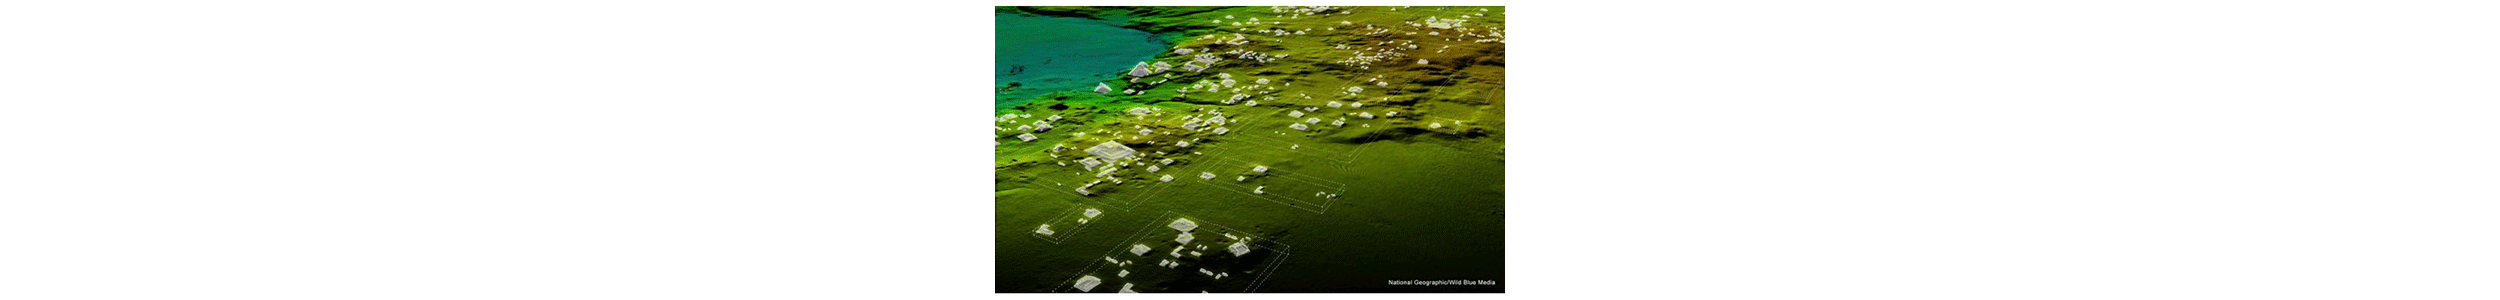 Лидар фирмы Teledyne Optech позволяет обнаружить обширные руины Майя